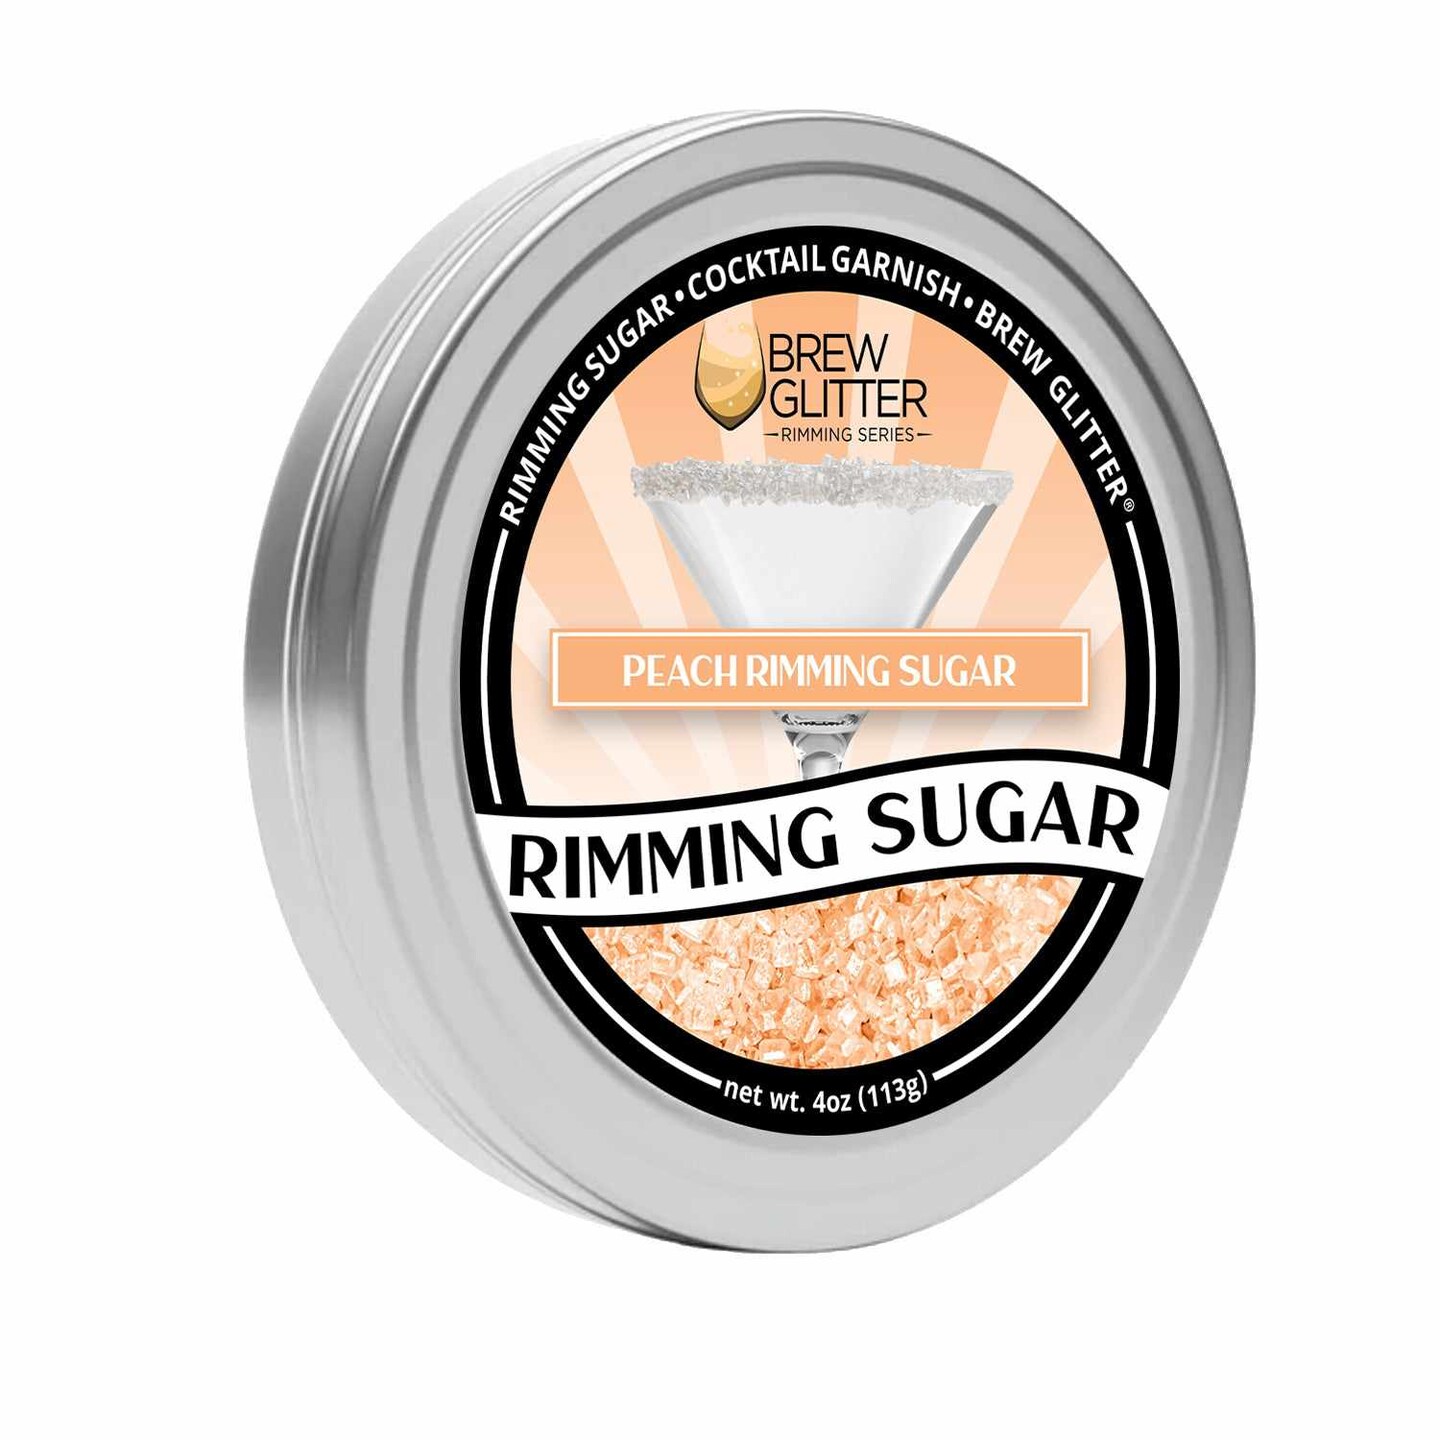 Peach Rimming Sugar